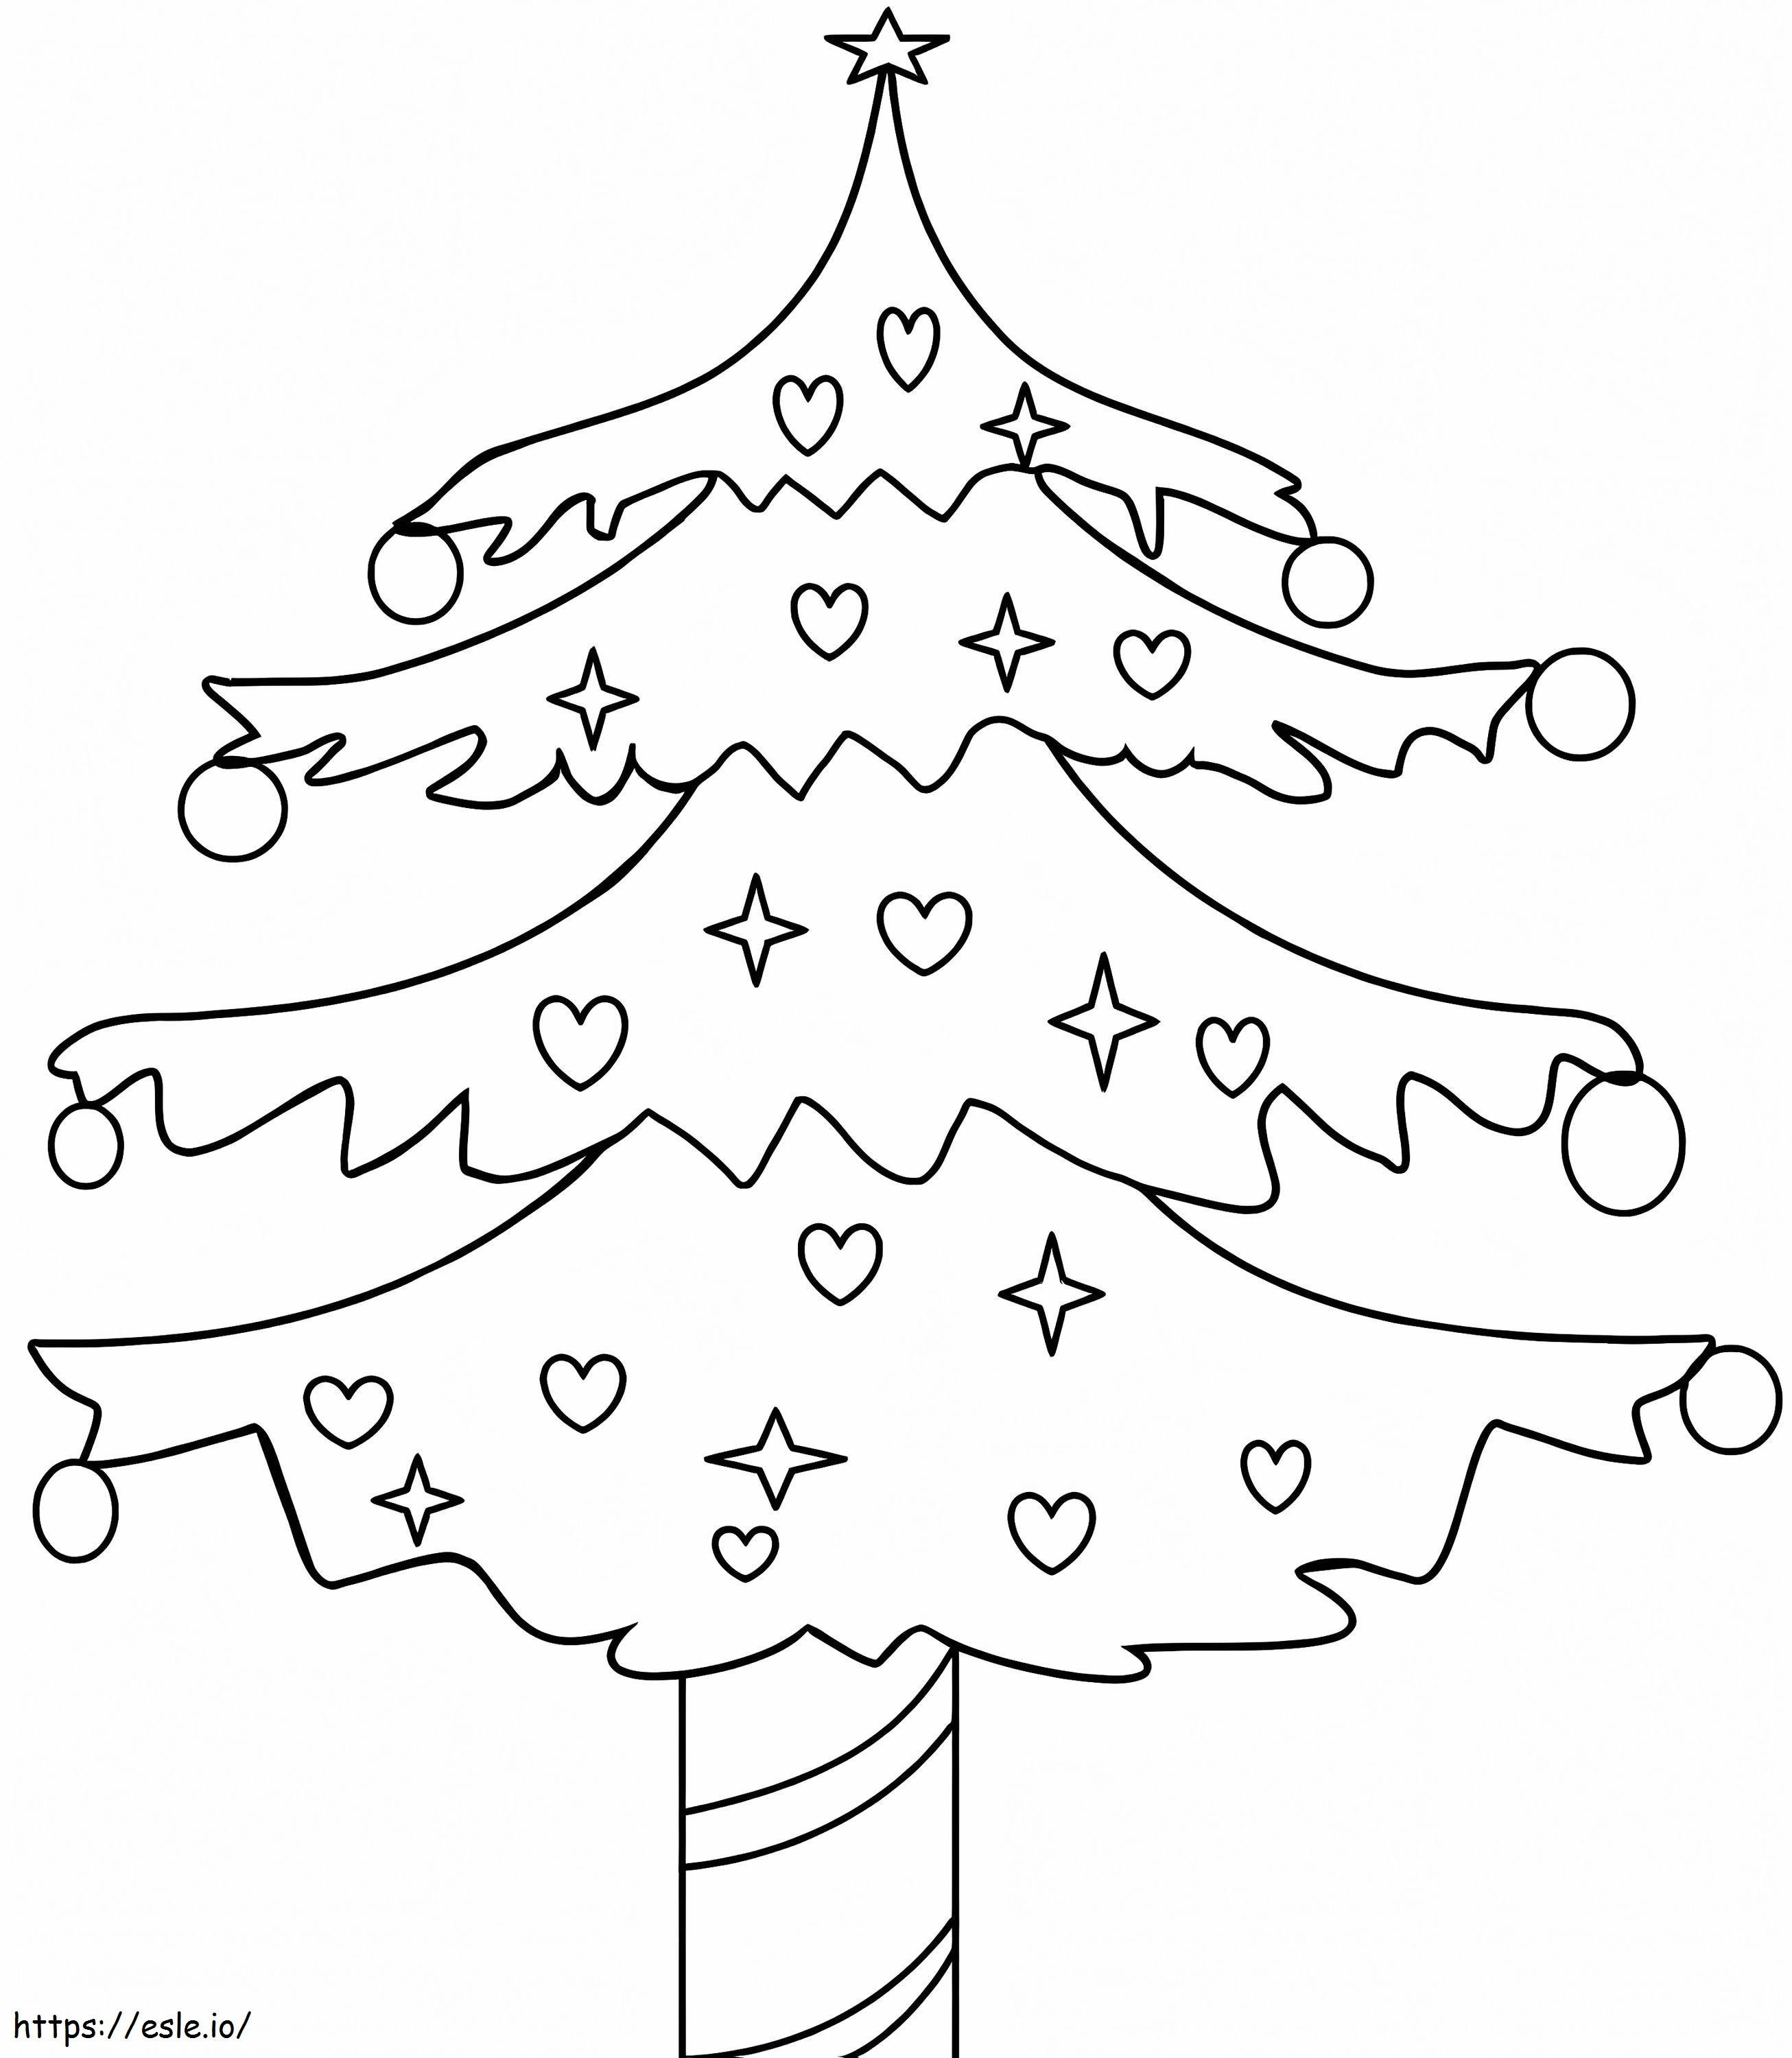 Coloriage Images gratuites d'arbre de Noël à imprimer dessin